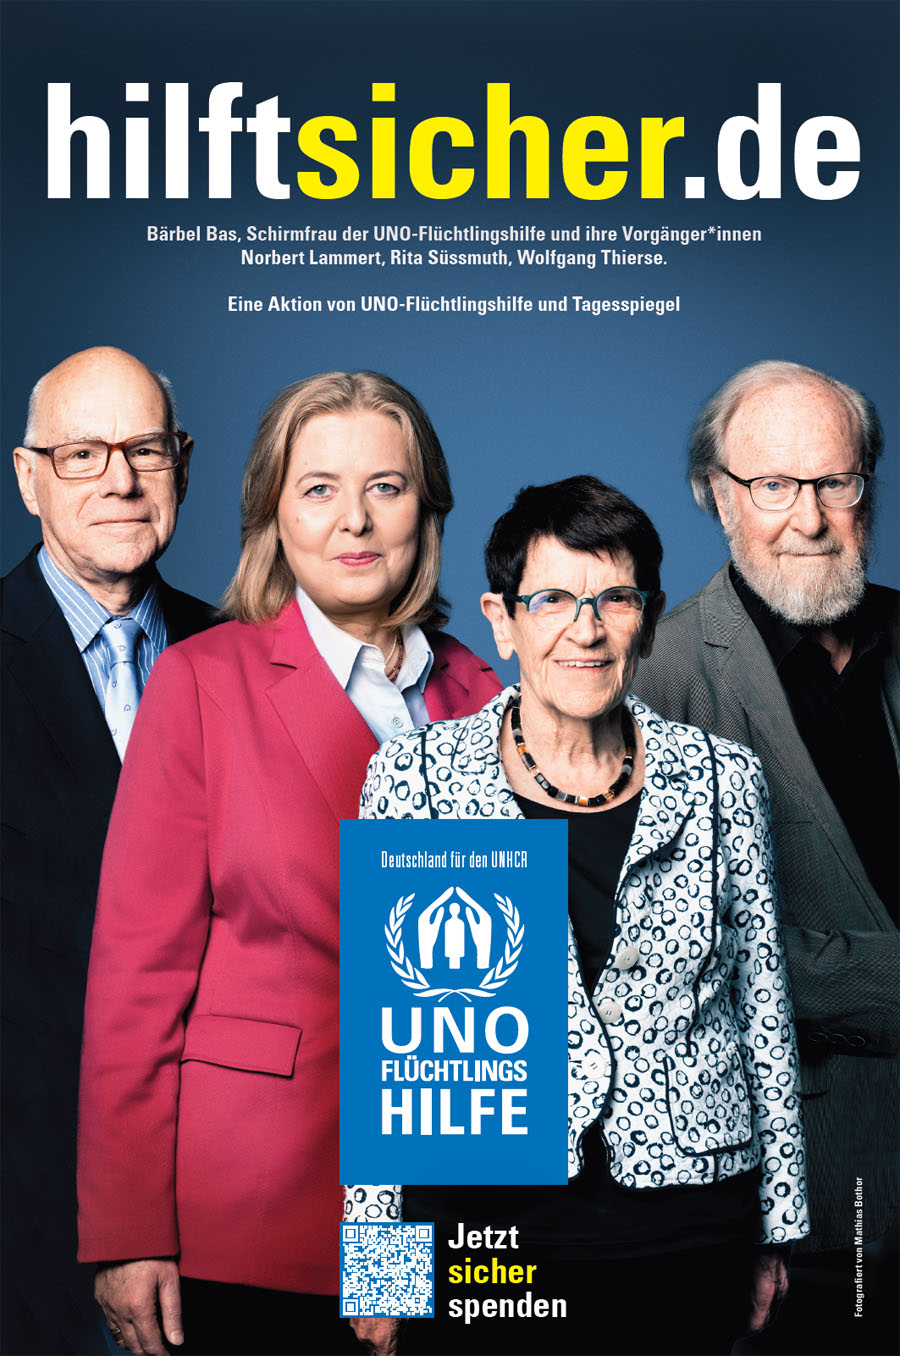 Bärbel Bas, Schirmfrau der UNO-Flüchtlingshilfe und ihre Vorgänger*innen Norbert Lammert, Rita Süssmuth, Wolfgang Thierse.